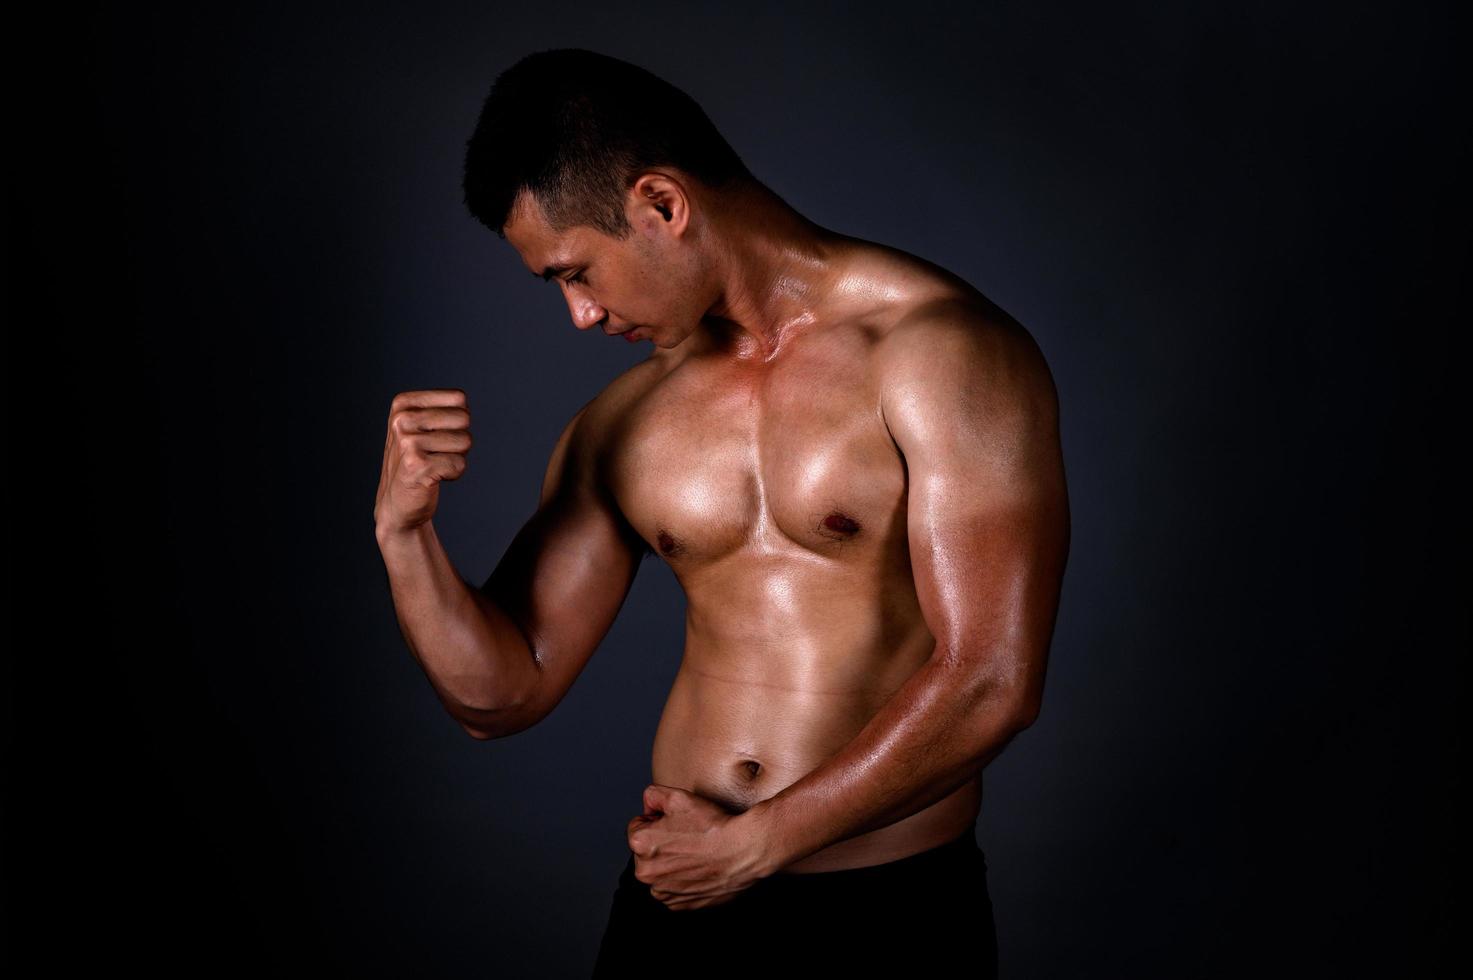 un homme asiatique fort a levé les bras pour montrer ses muscles forts et beaux de l'exercice photo